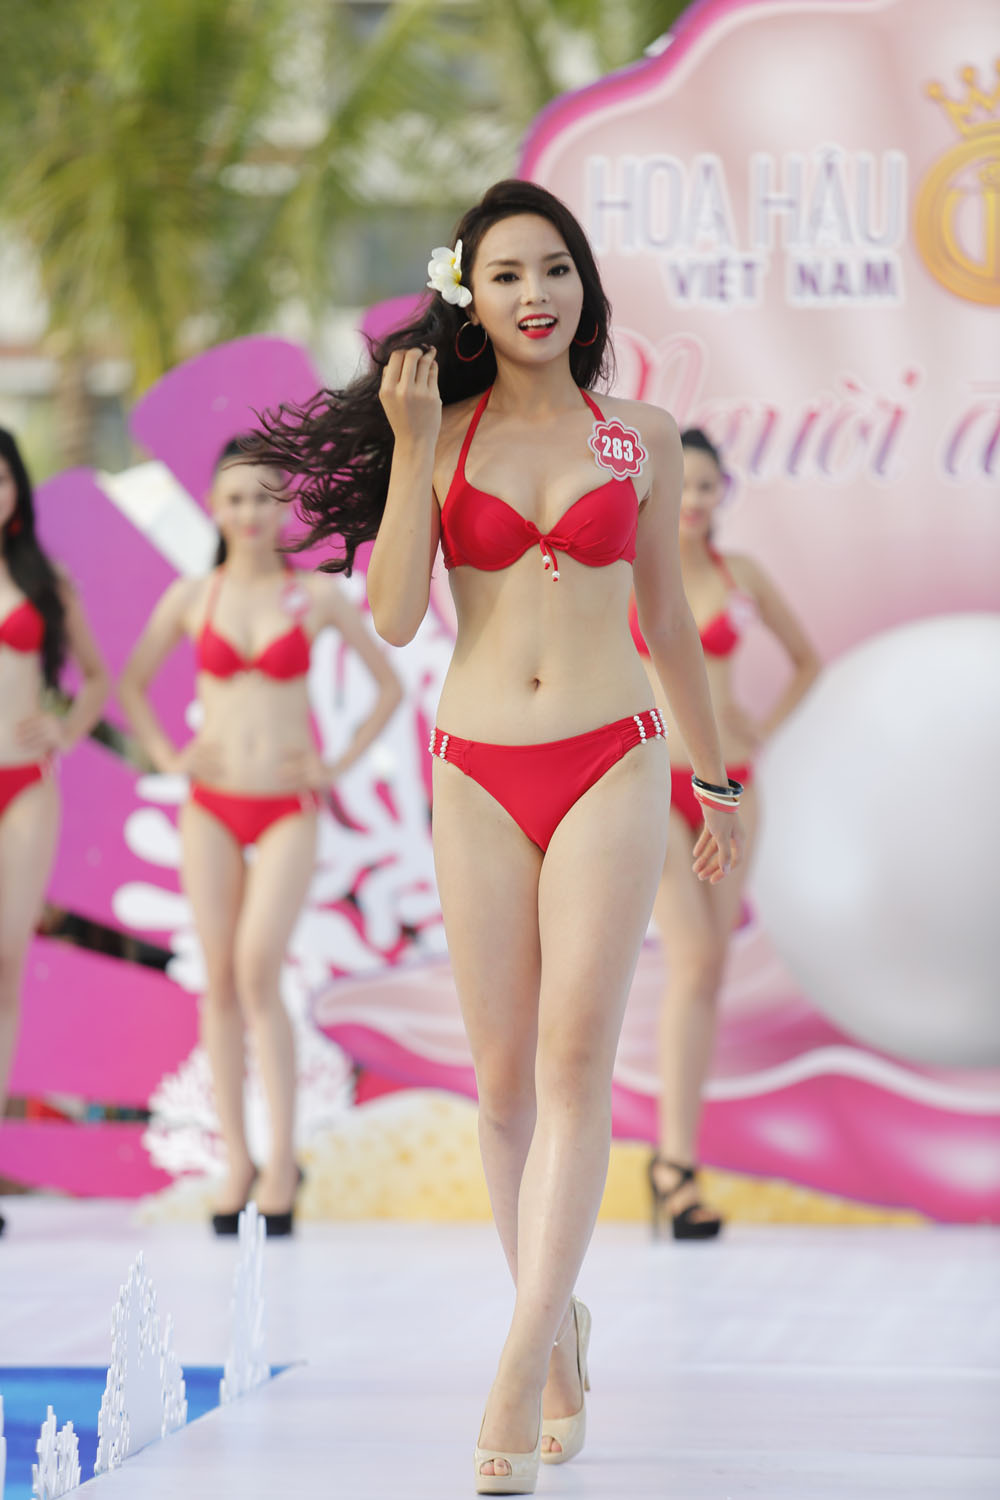 Á hậu 2 của cuộc thi Diễm Trang cũng có những nhận xét tích cực về Hoa hậu Nguyễn Cao Kỳ Duyên: 